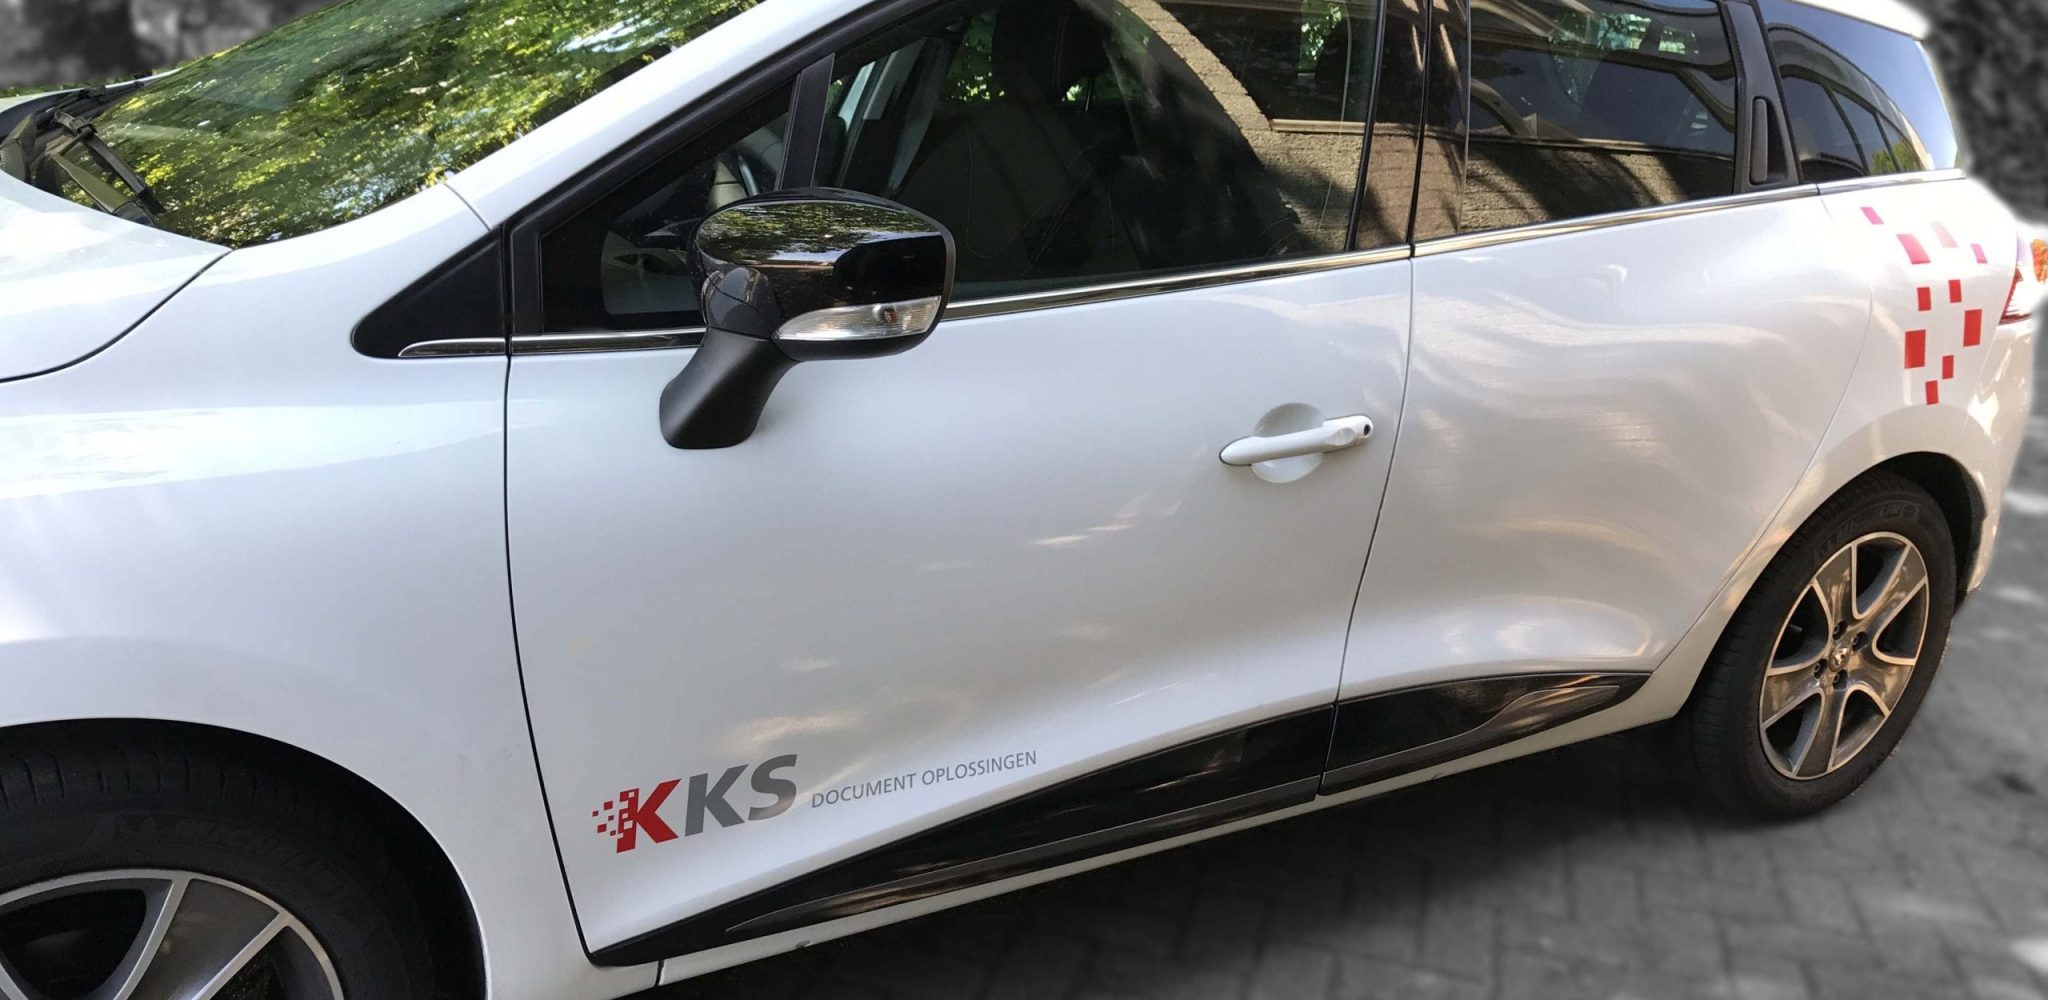 kks-logo-autosticker-scaled